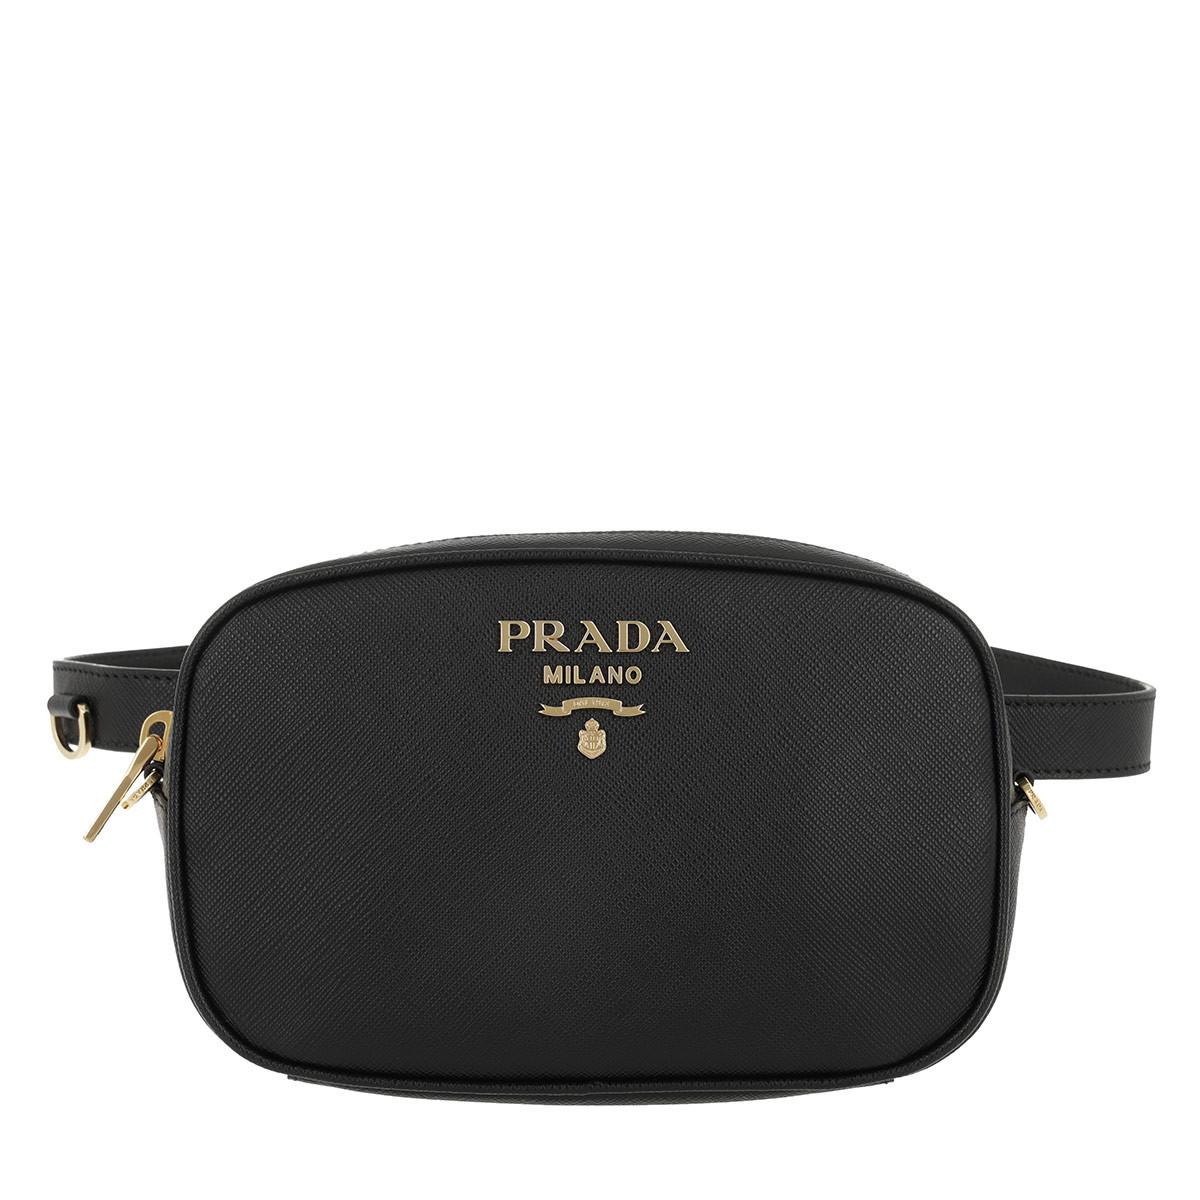 prada belt bag black